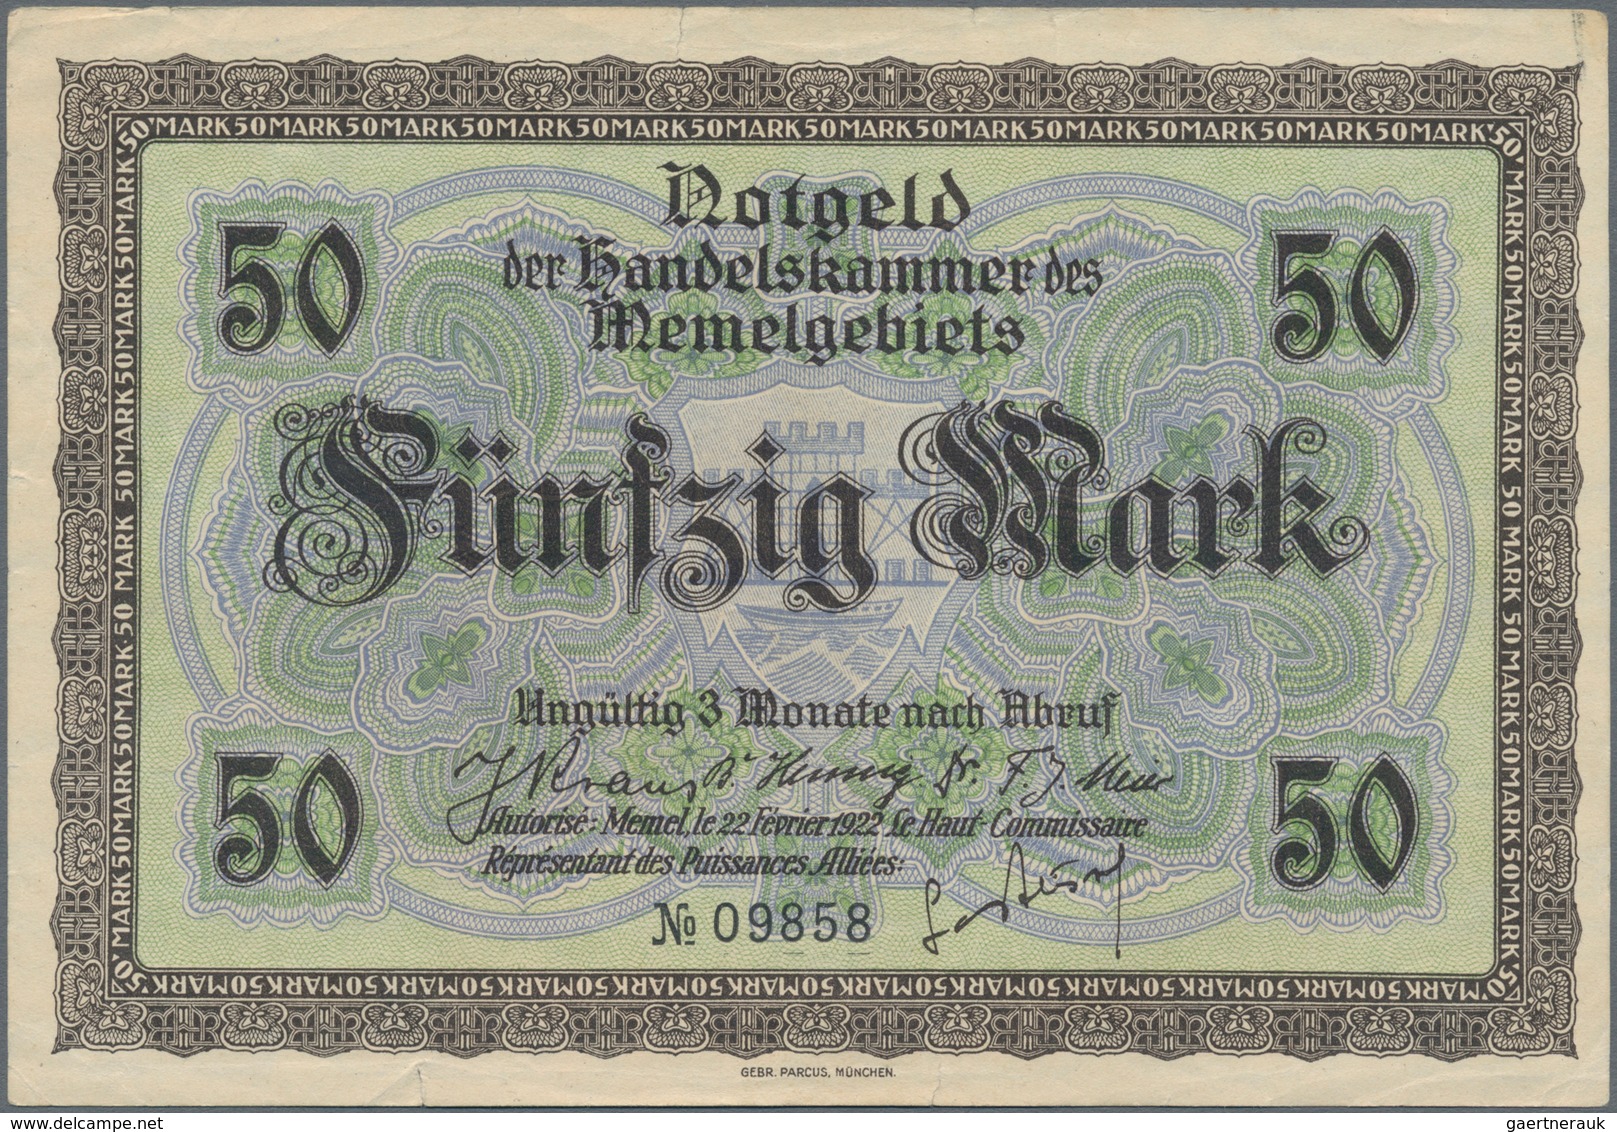 Deutschland - Nebengebiete Deutsches Reich: Memel, großes Lot mit 13 Banknoten, dabei ½ Mark Ro.846b